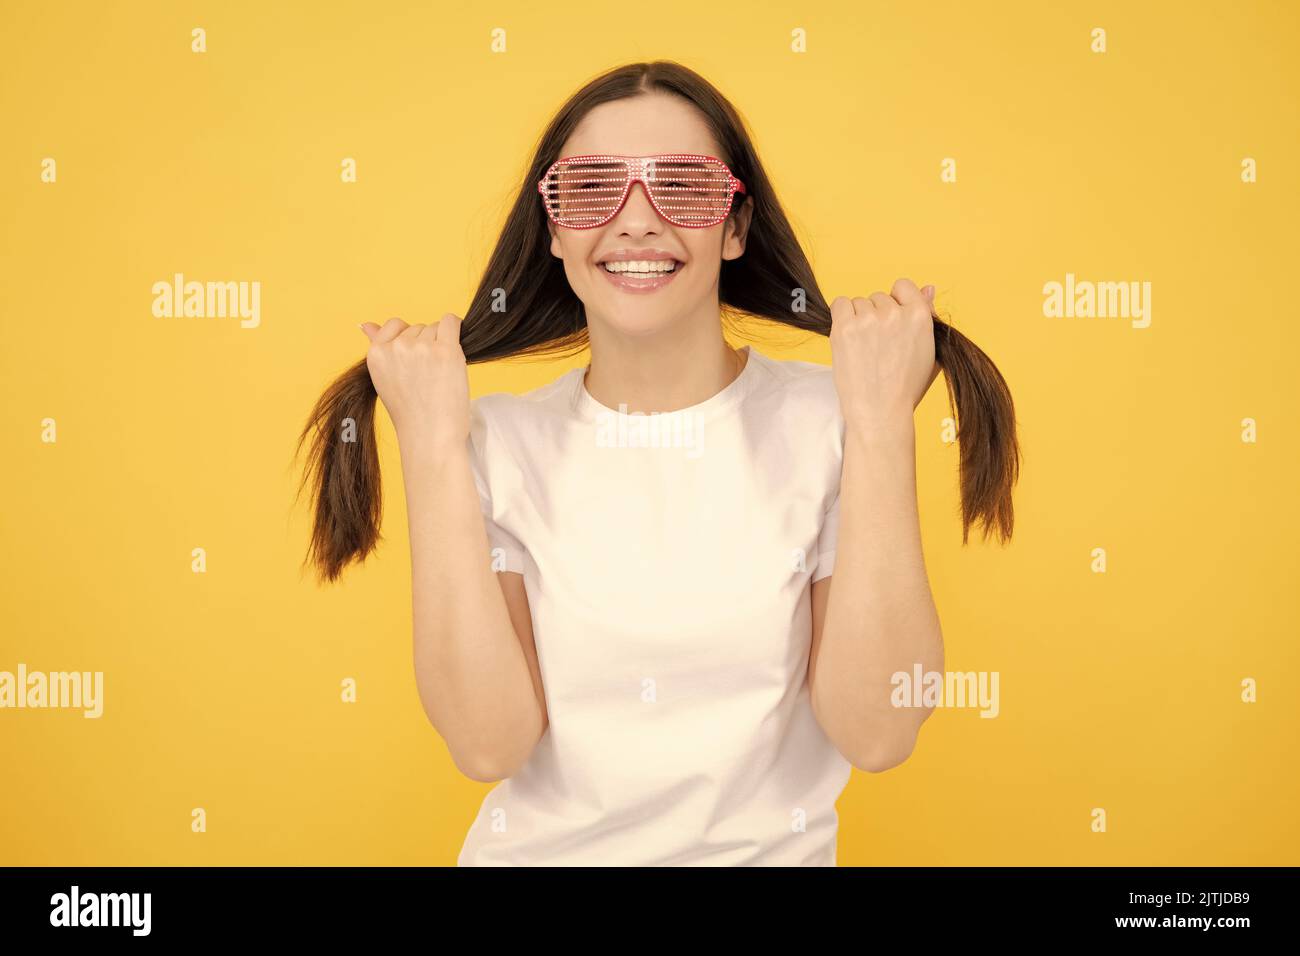 Schönheit lustige Teenager-Mädchen mit Party-Brille, gelber Hintergrund. Überrascht junge Frau mit Spaß Brille. Stockfoto